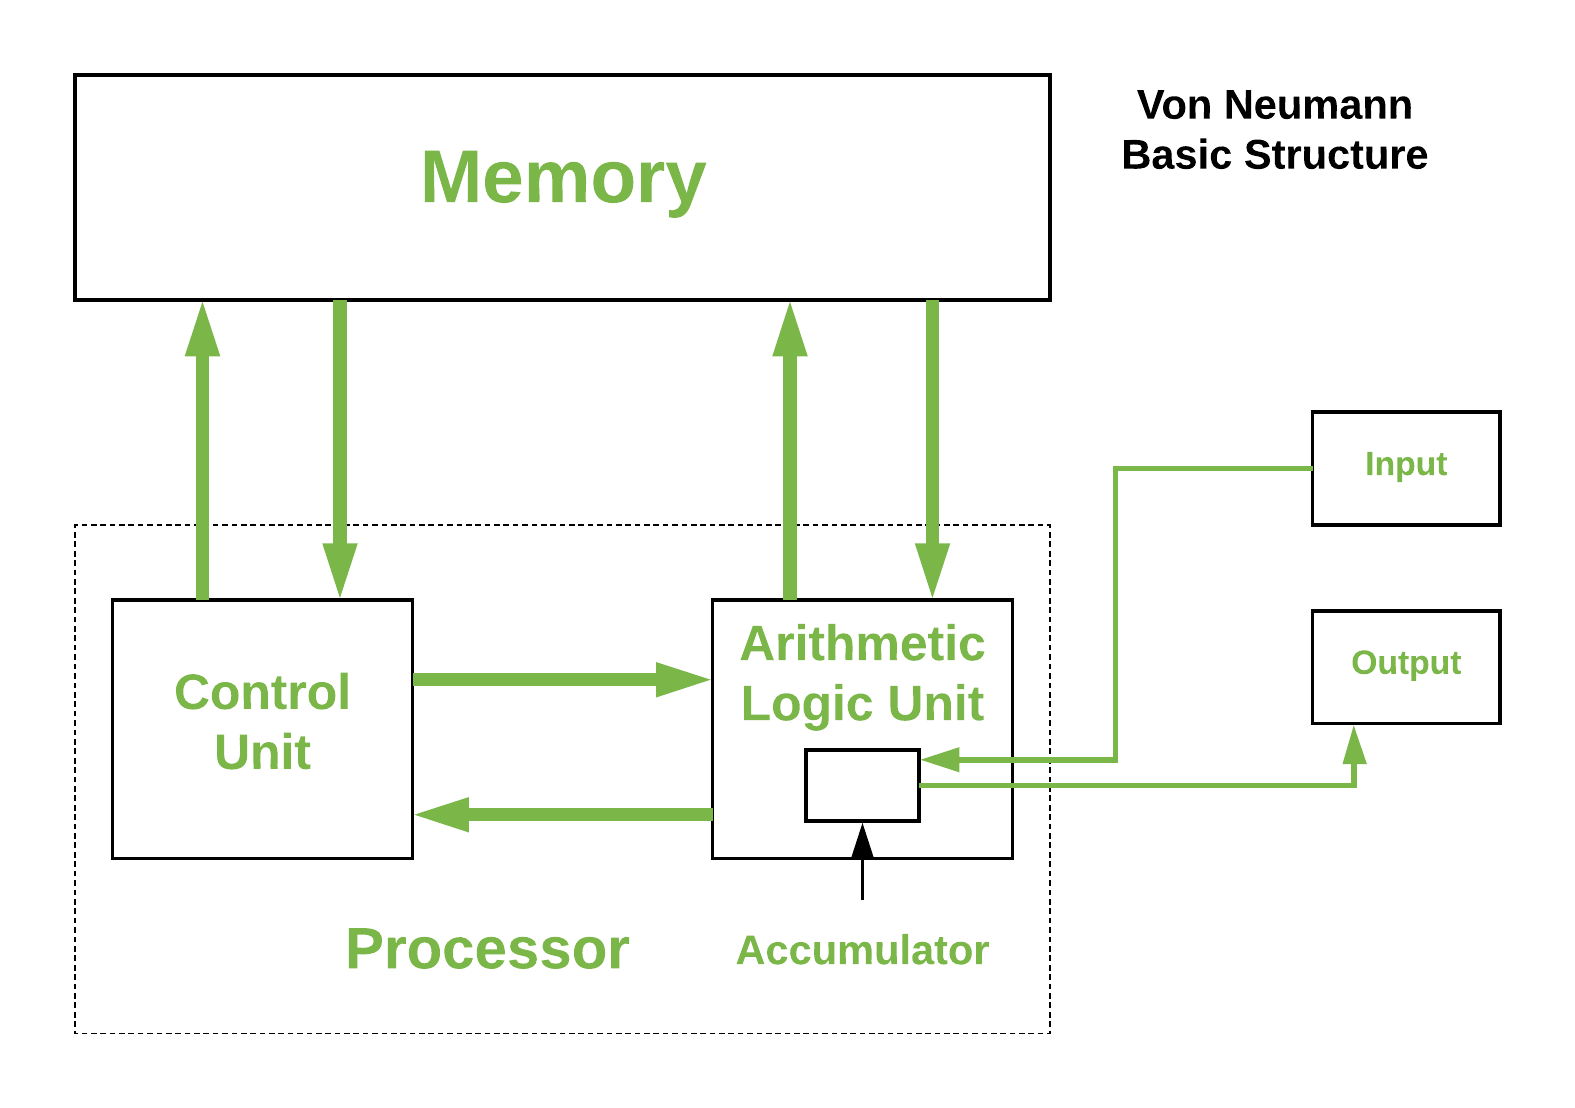 Arquitetura Von-Neumann